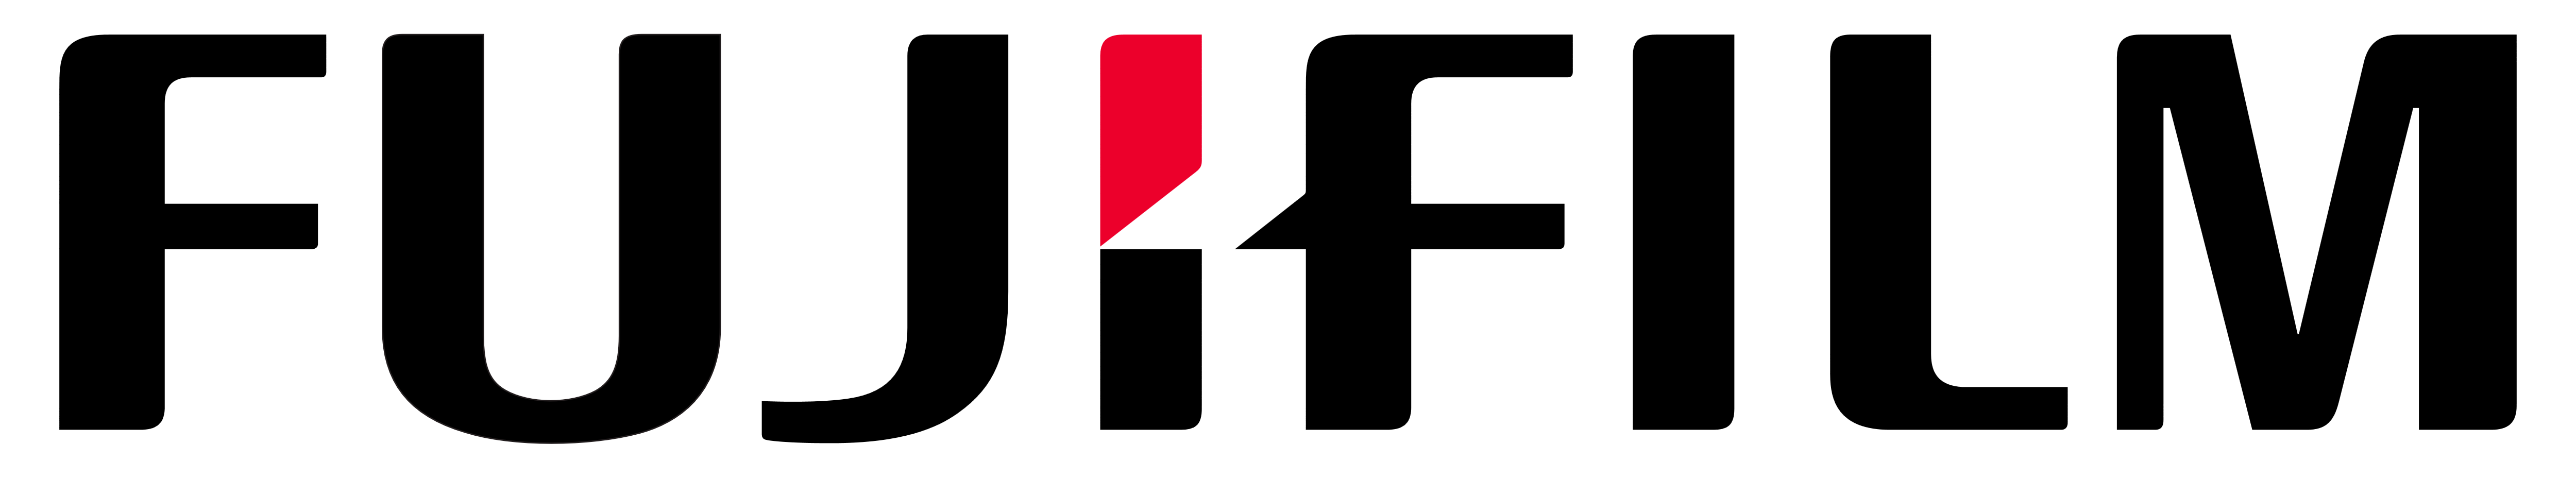 Fujifilm logo logotype